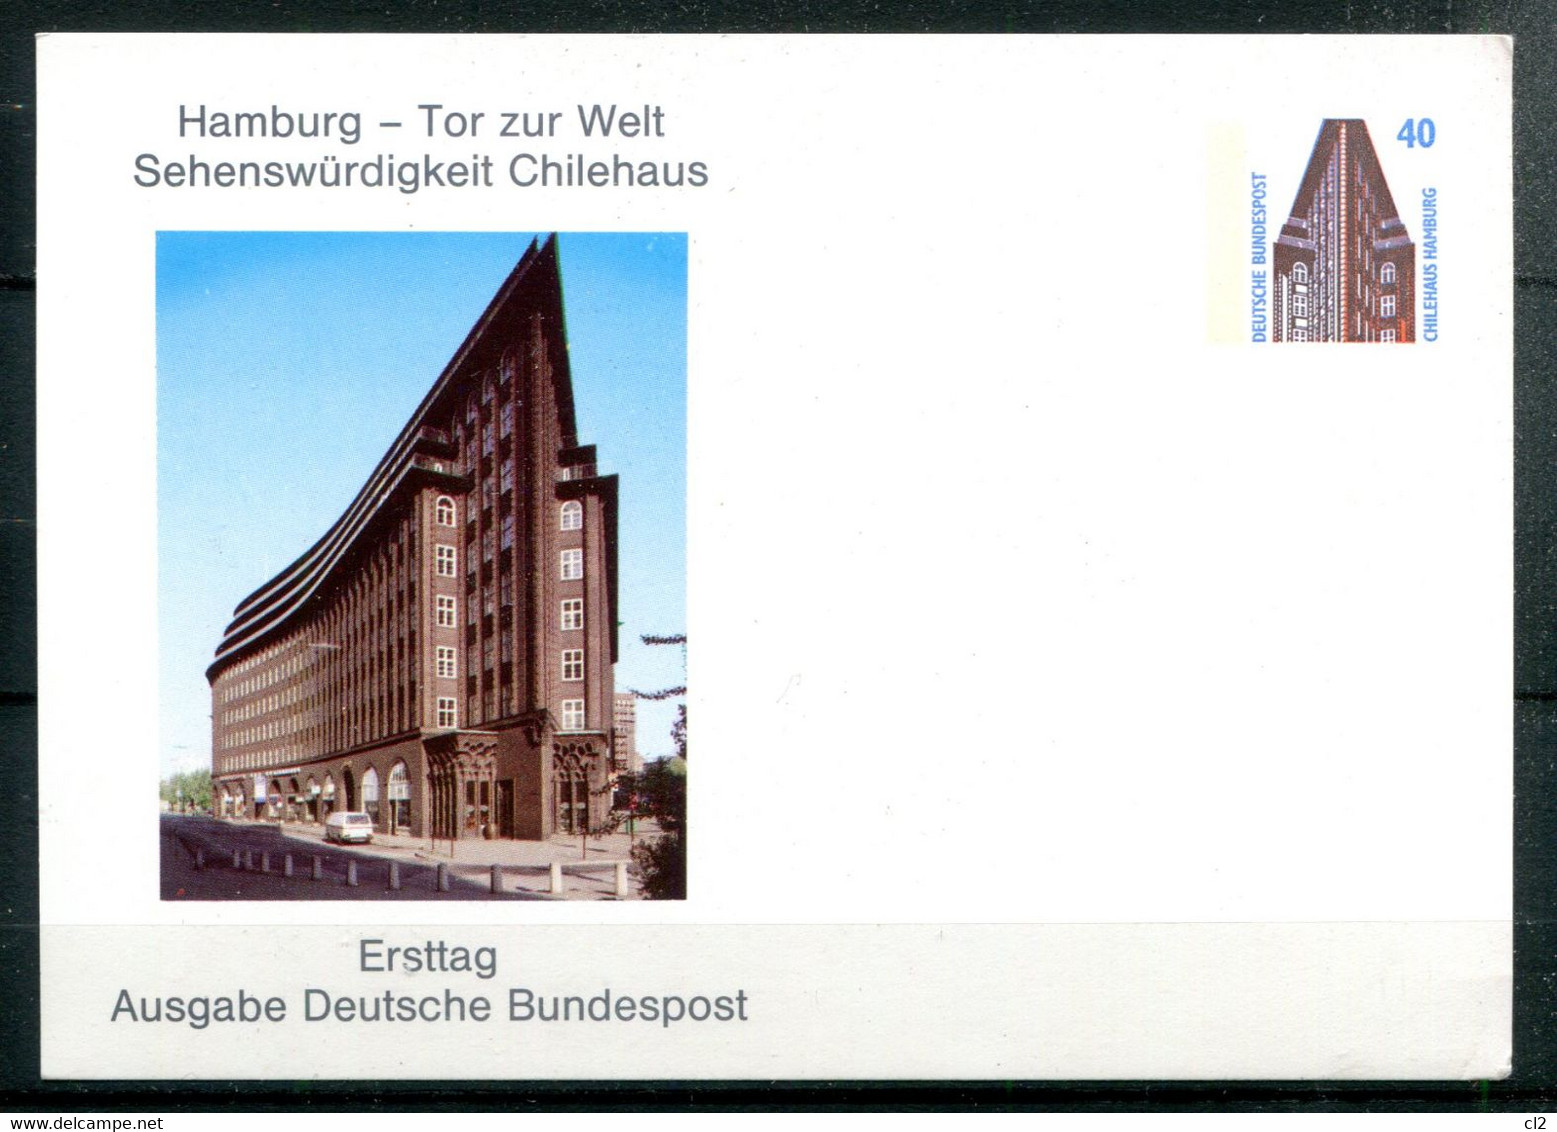 HAMBURG - Tor Zur Welt Sehenswürdigkeit Chilehaus - Ersttag Ausgabe Deutsche Bundespost - Cartoline Private - Nuovi